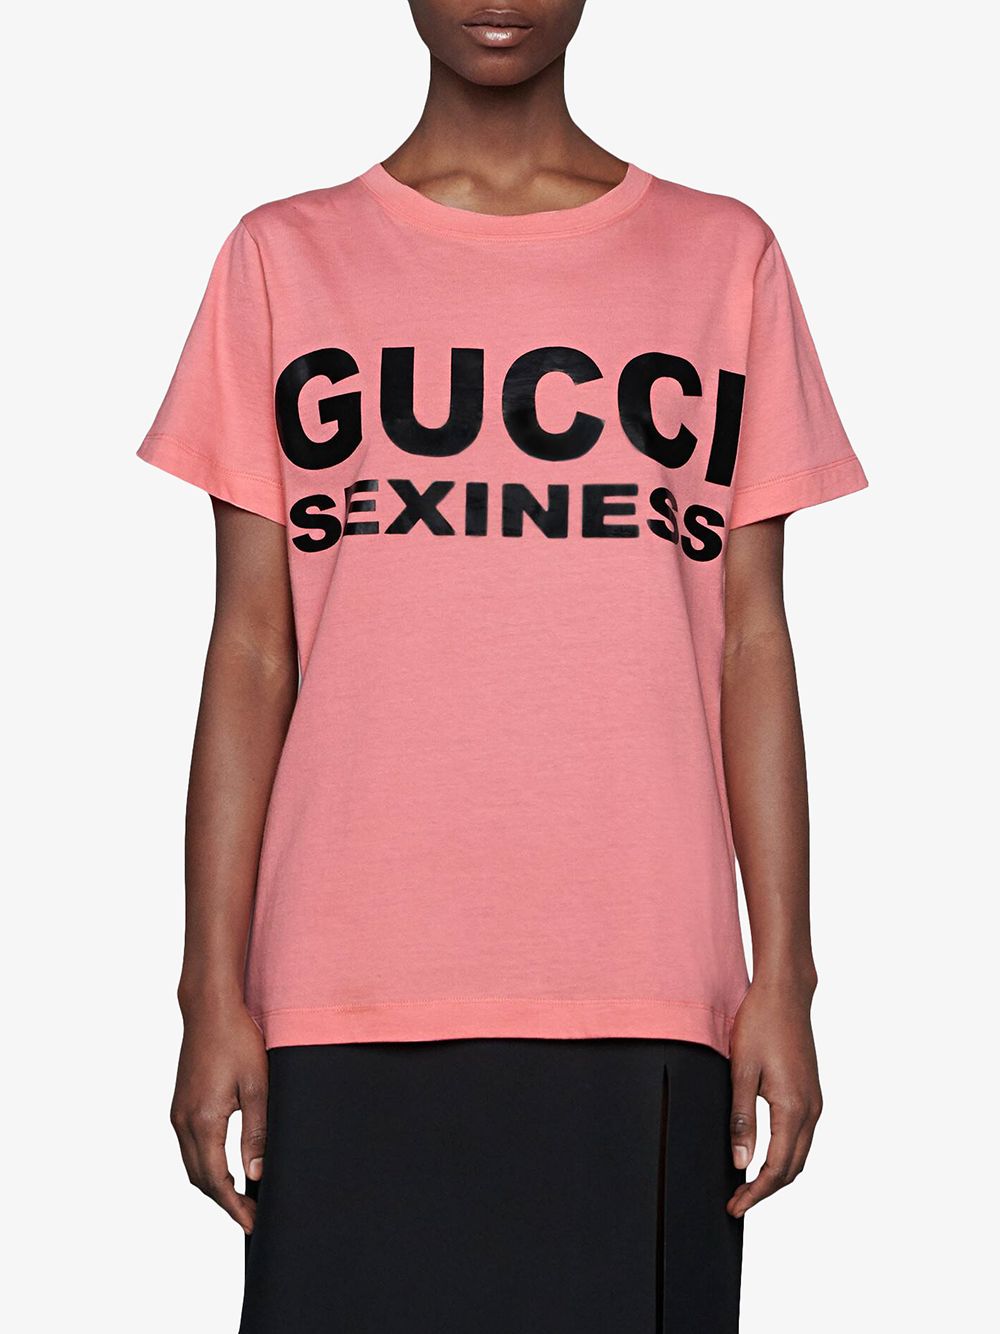 фото Gucci футболка с надписью